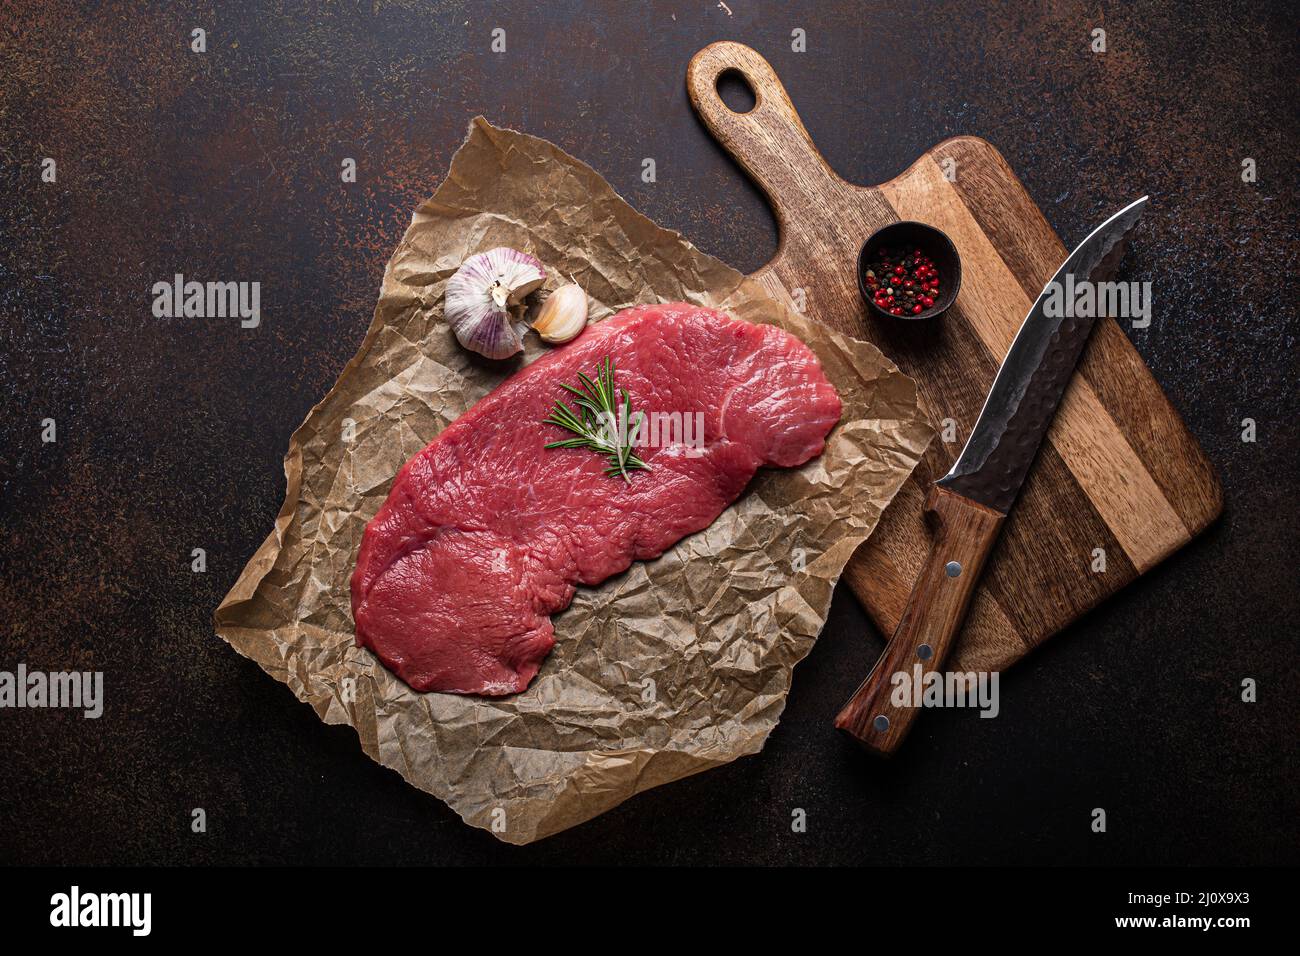 Filet de bœuf maigre sur du papier à pâtisserie avec du romarin, de l'ail et des épices Banque D'Images